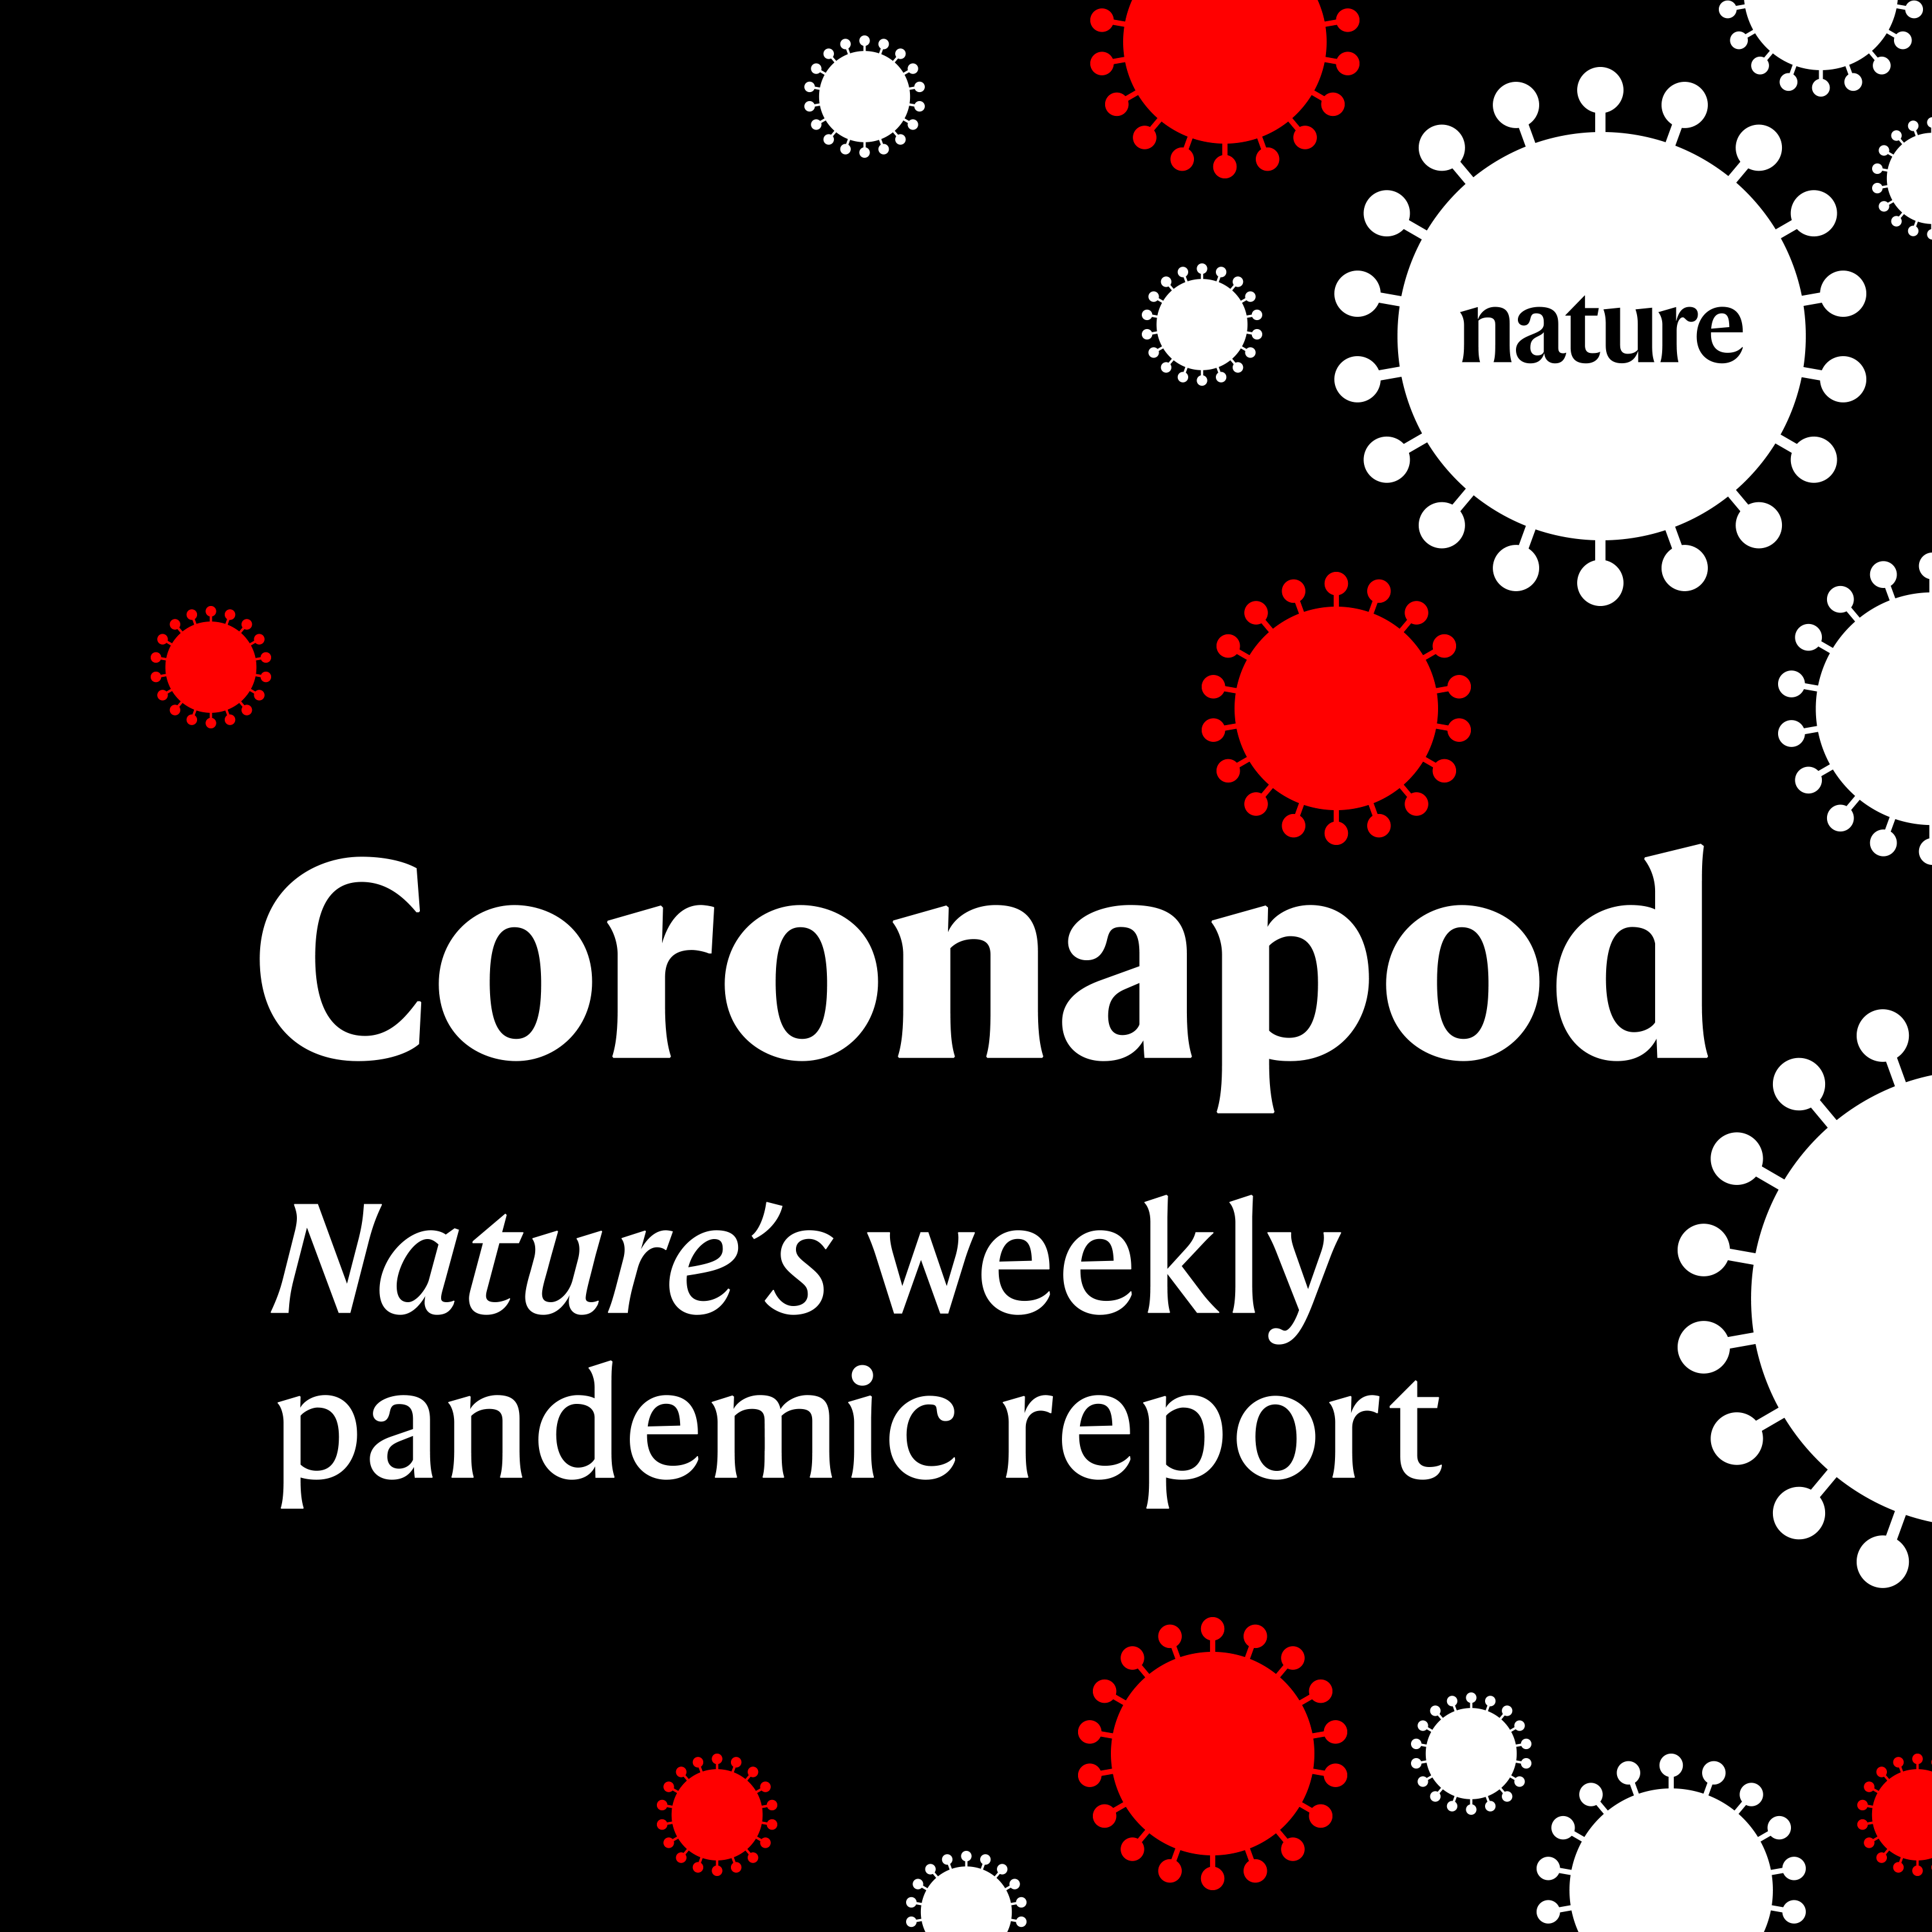 Coronapod: the COVID scientists facing violent threats